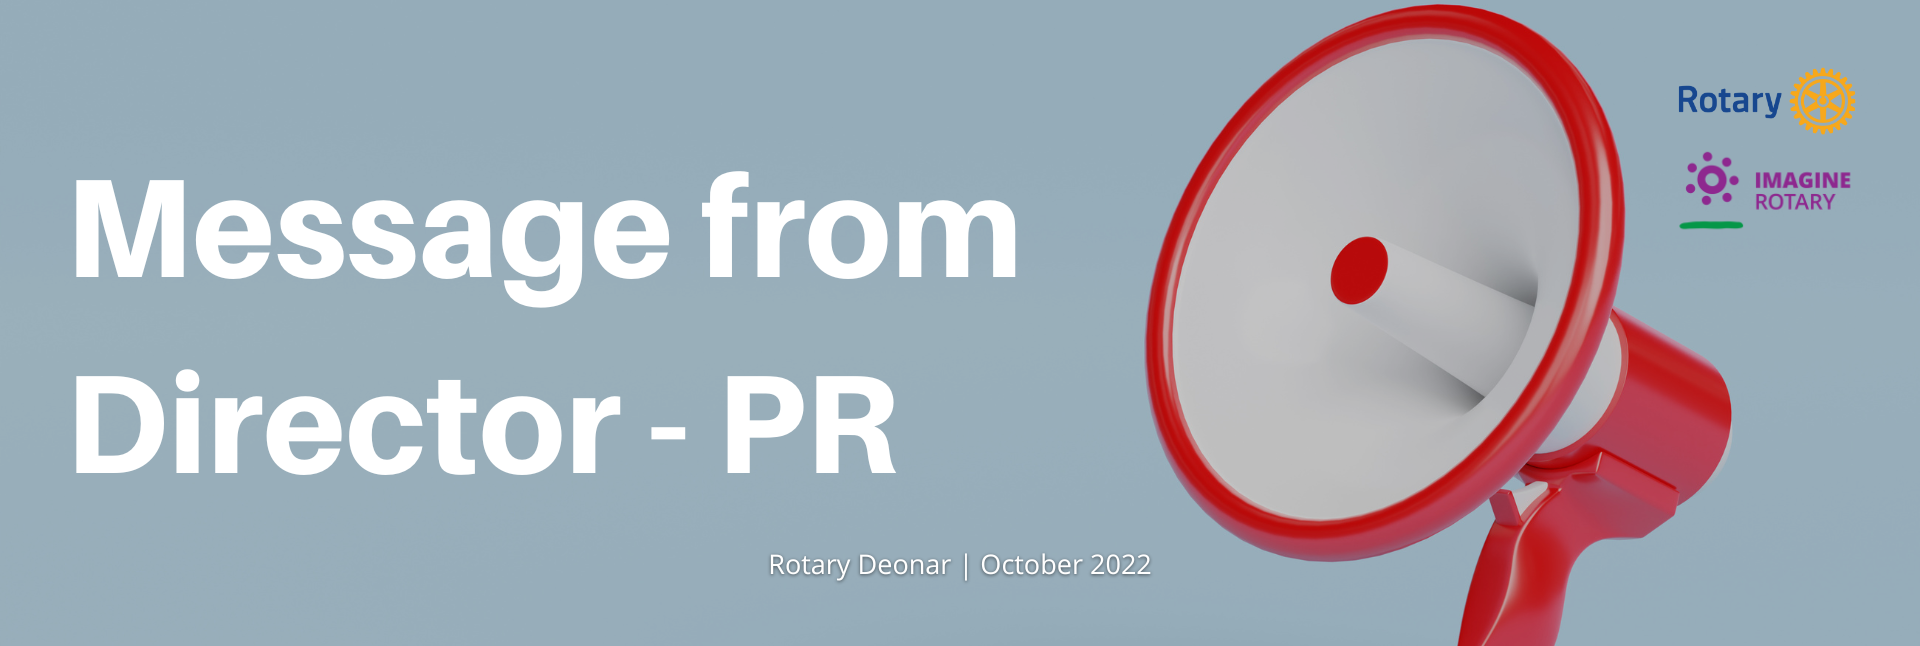 PR Newsletter October 2022